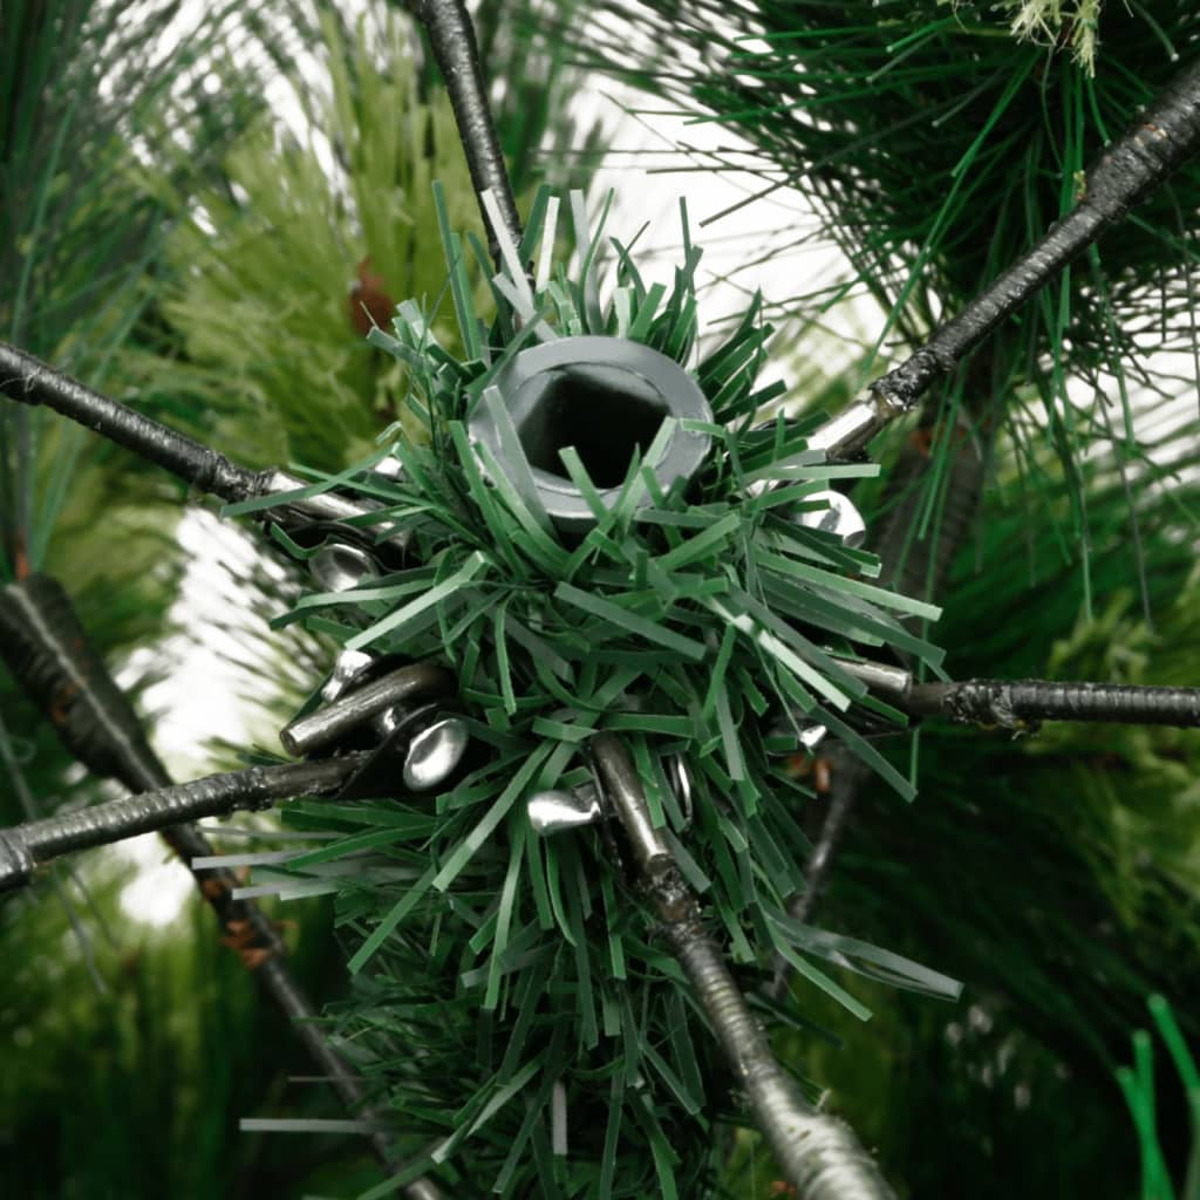 VIDAXL 356736 Weihnachtsbaum